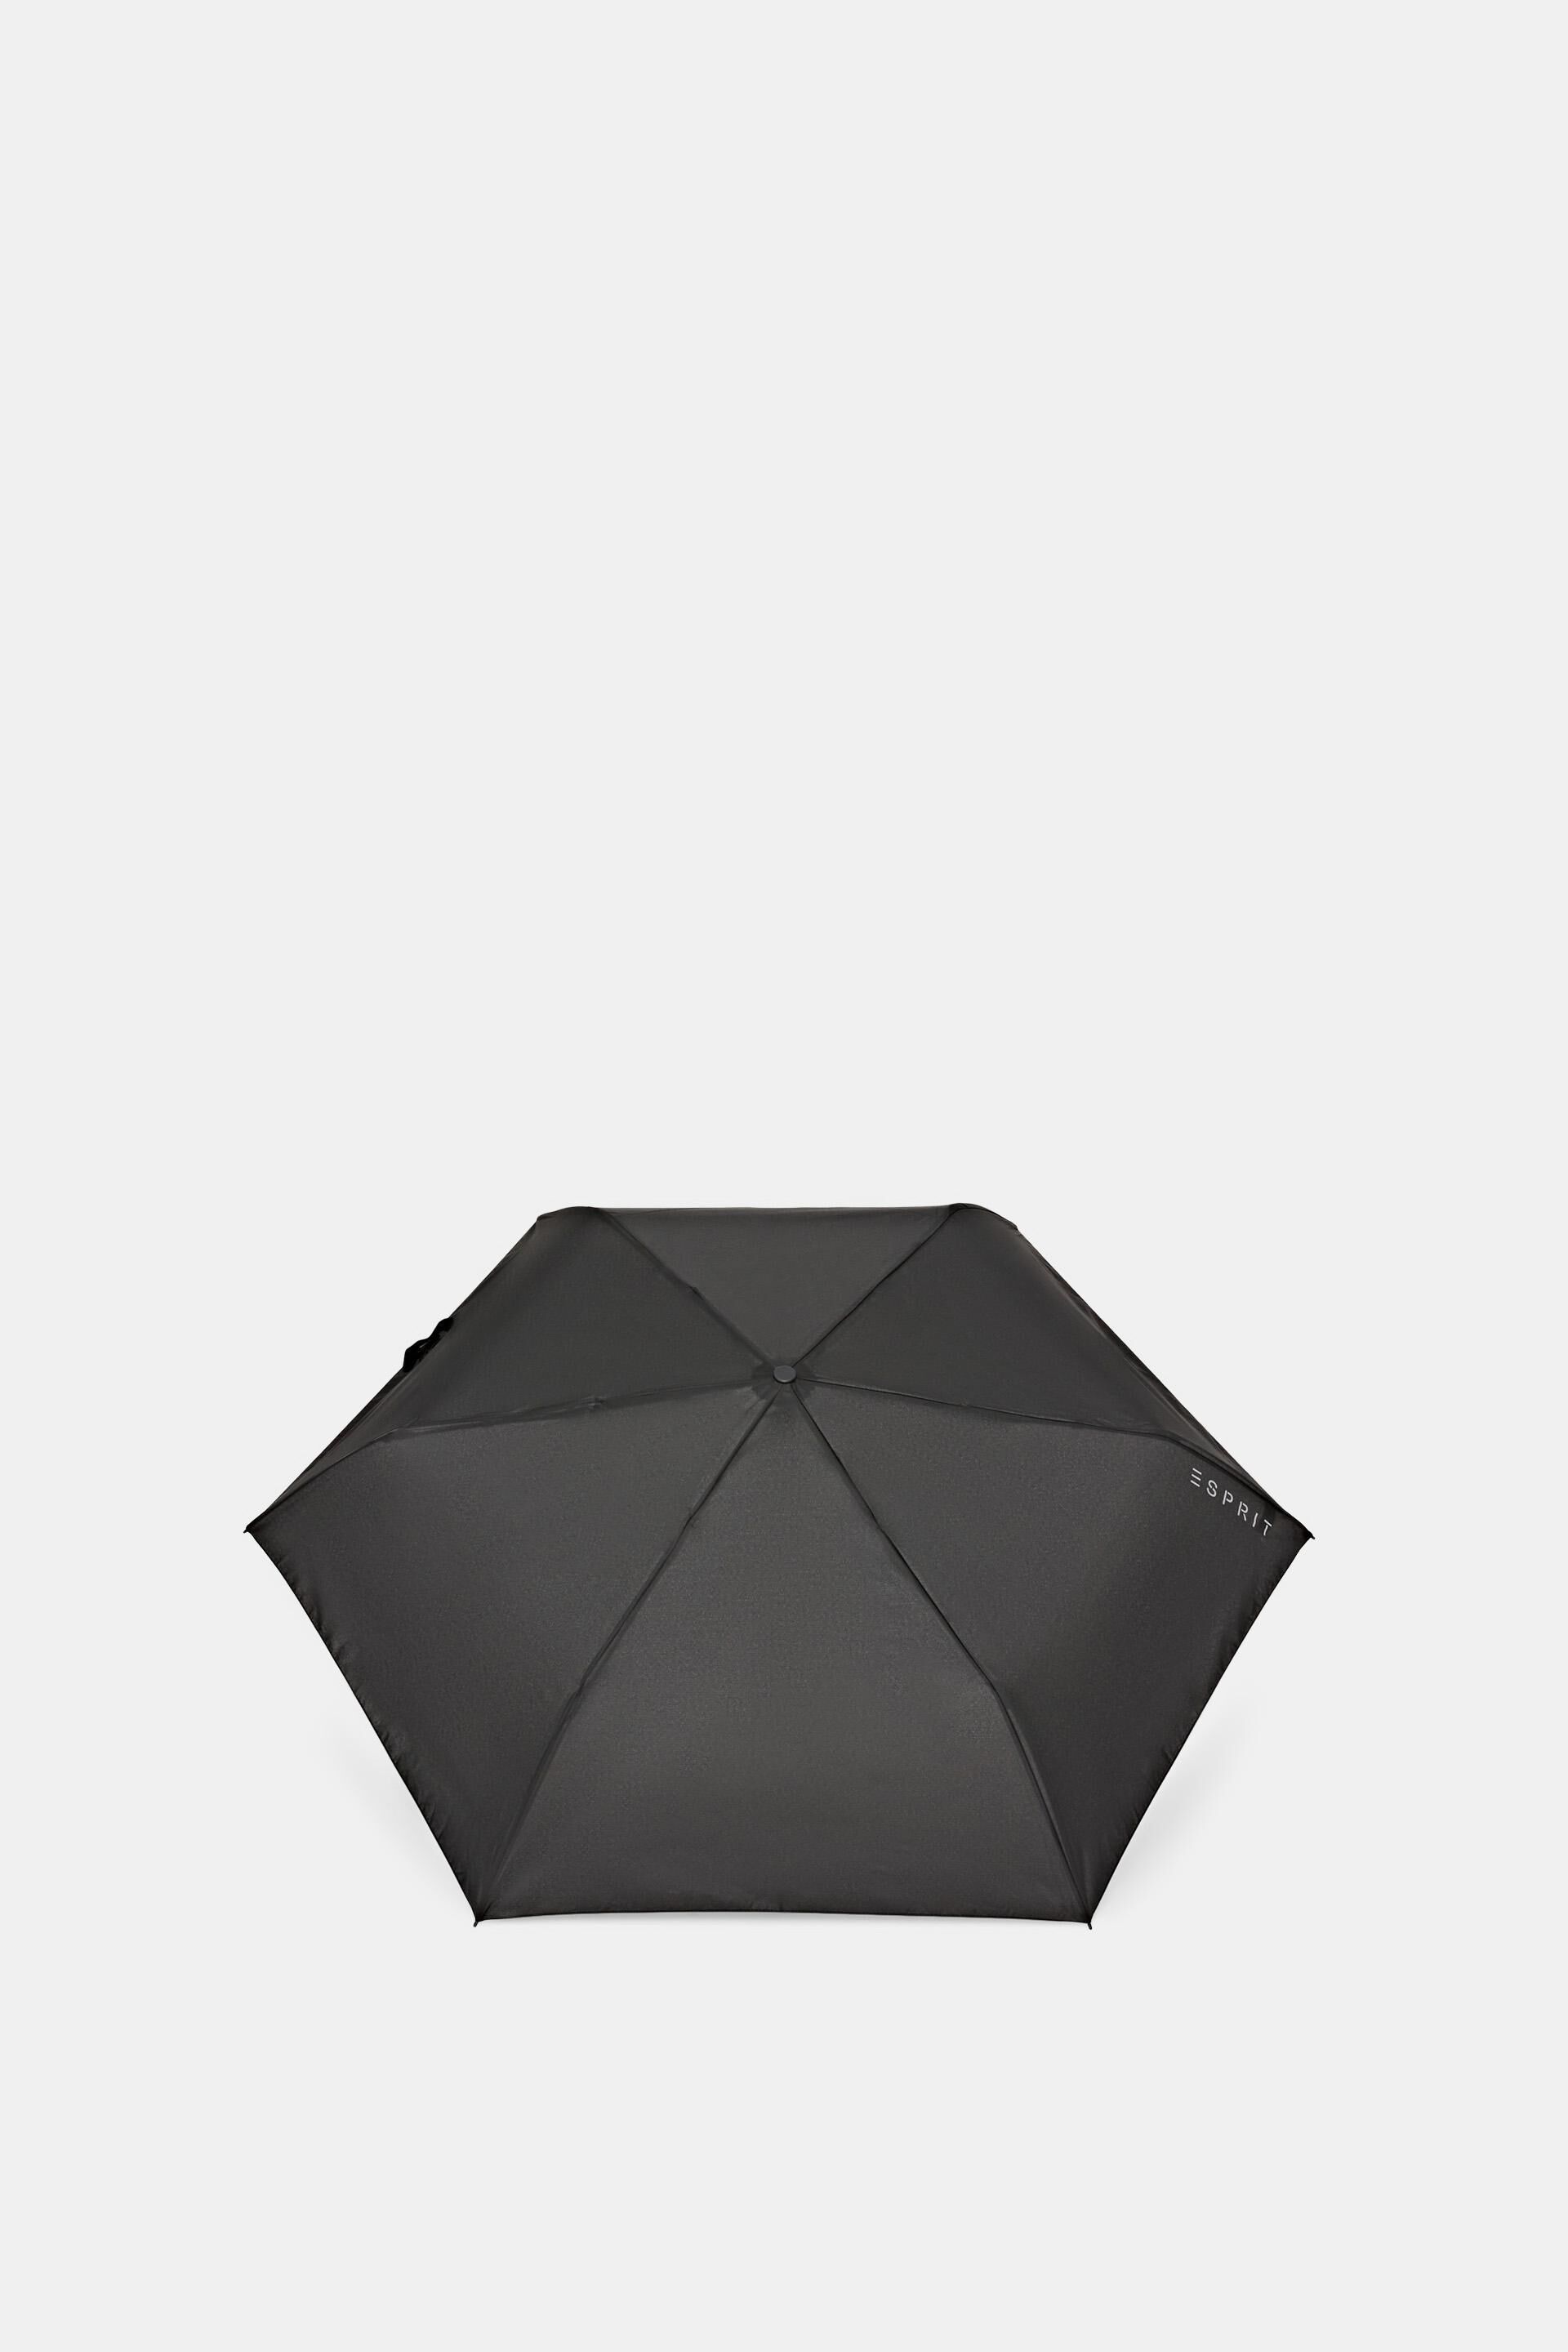 ESPRIT - Easymatic slimline pocket umbrella in black at our online shop